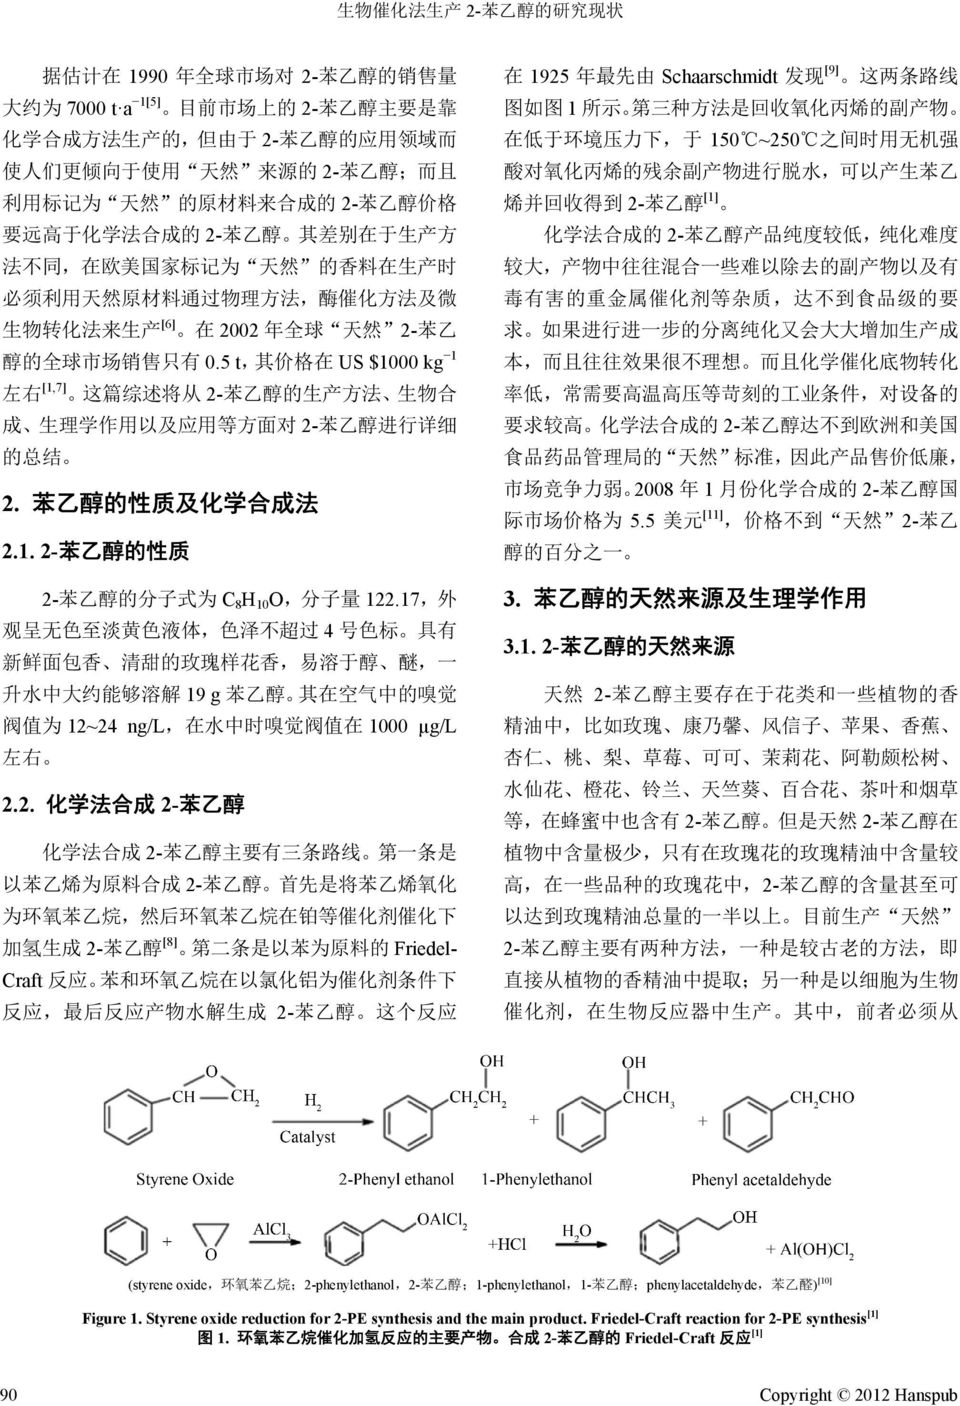 的 全 球 市 场 销 售 只 有 0.5 t, 其 价 格 在 US $1000 kg 1 左 右 [1,7] 这 篇 综 述 将 从 2- 苯 乙 醇 的 生 产 方 法 生 物 合 成 生 理 学 作 用 以 及 应 用 等 方 面 对 2- 苯 乙 醇 进 行 详 细 的 总 结 2. 苯 乙 醇 的 性 质 及 化 学 合 成 法 2.1. 2- 苯 乙 醇 的 性 质 2- 苯 乙 醇 的 分 子 式 为 C 8 H 10 O, 分 子 量 122.